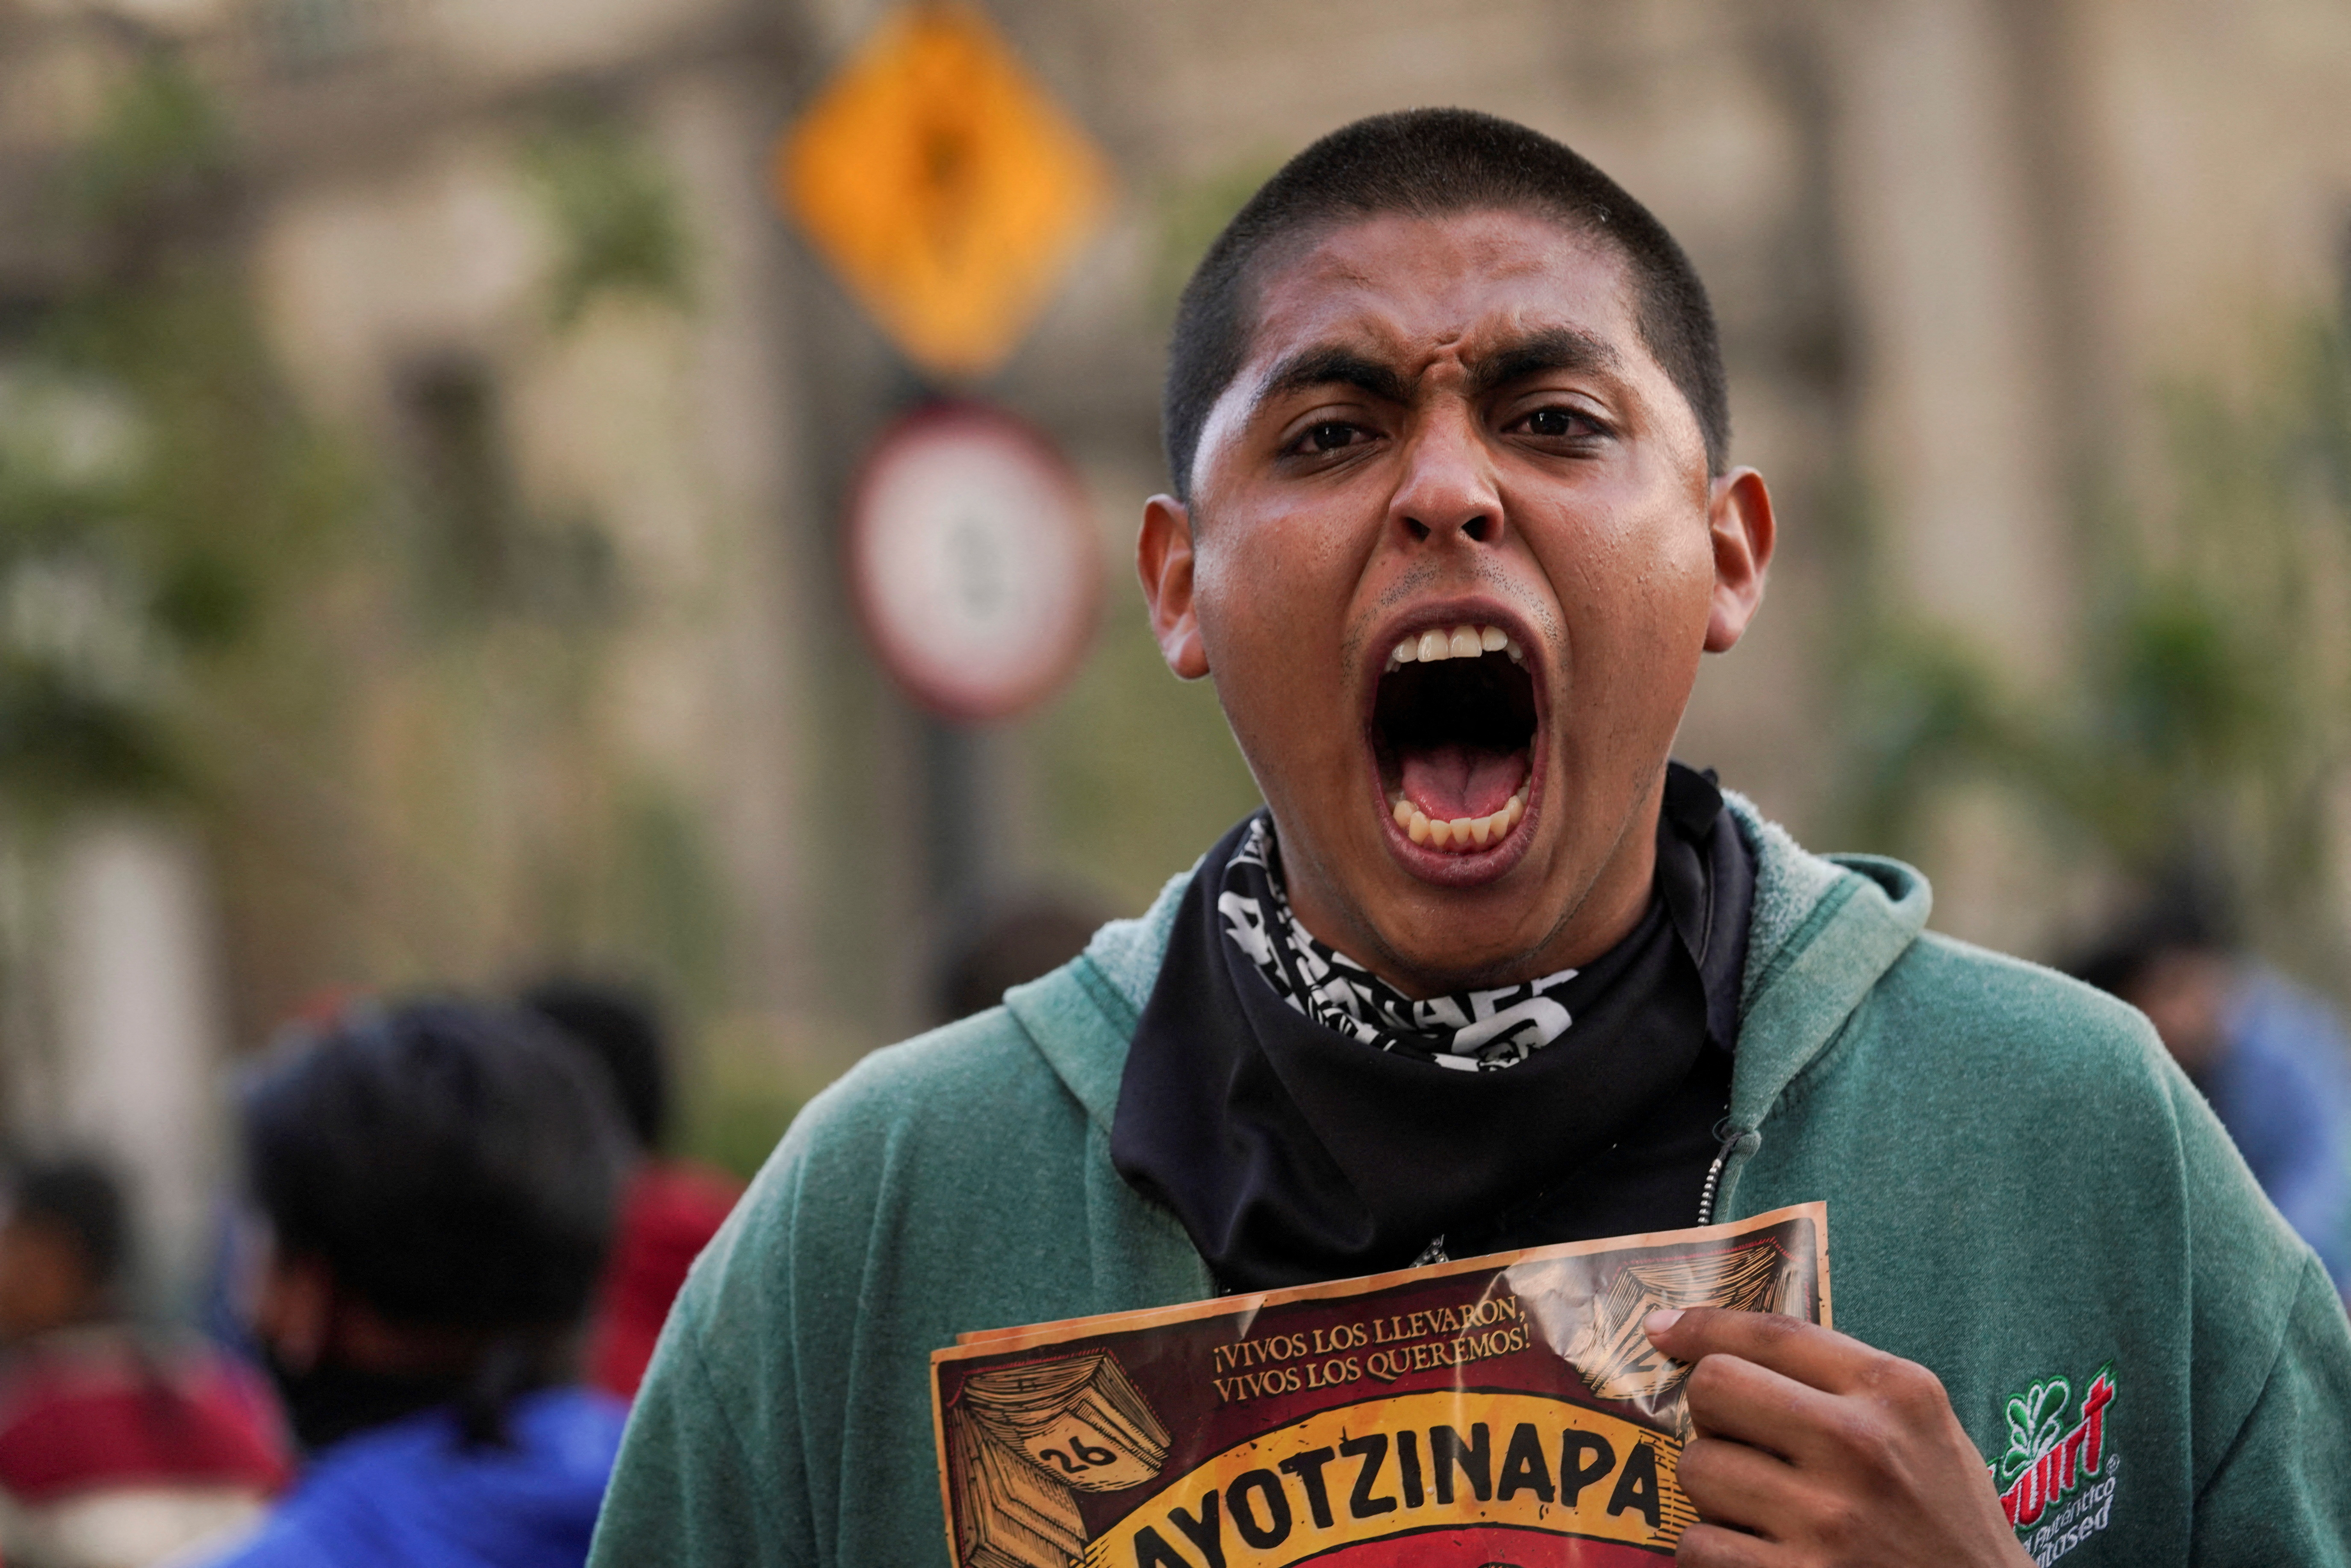 “Injerencias externas amenazan libertad en caso Ayotzinapa”: ONG´s exigen destitución del Fiscal Gertz Manero 